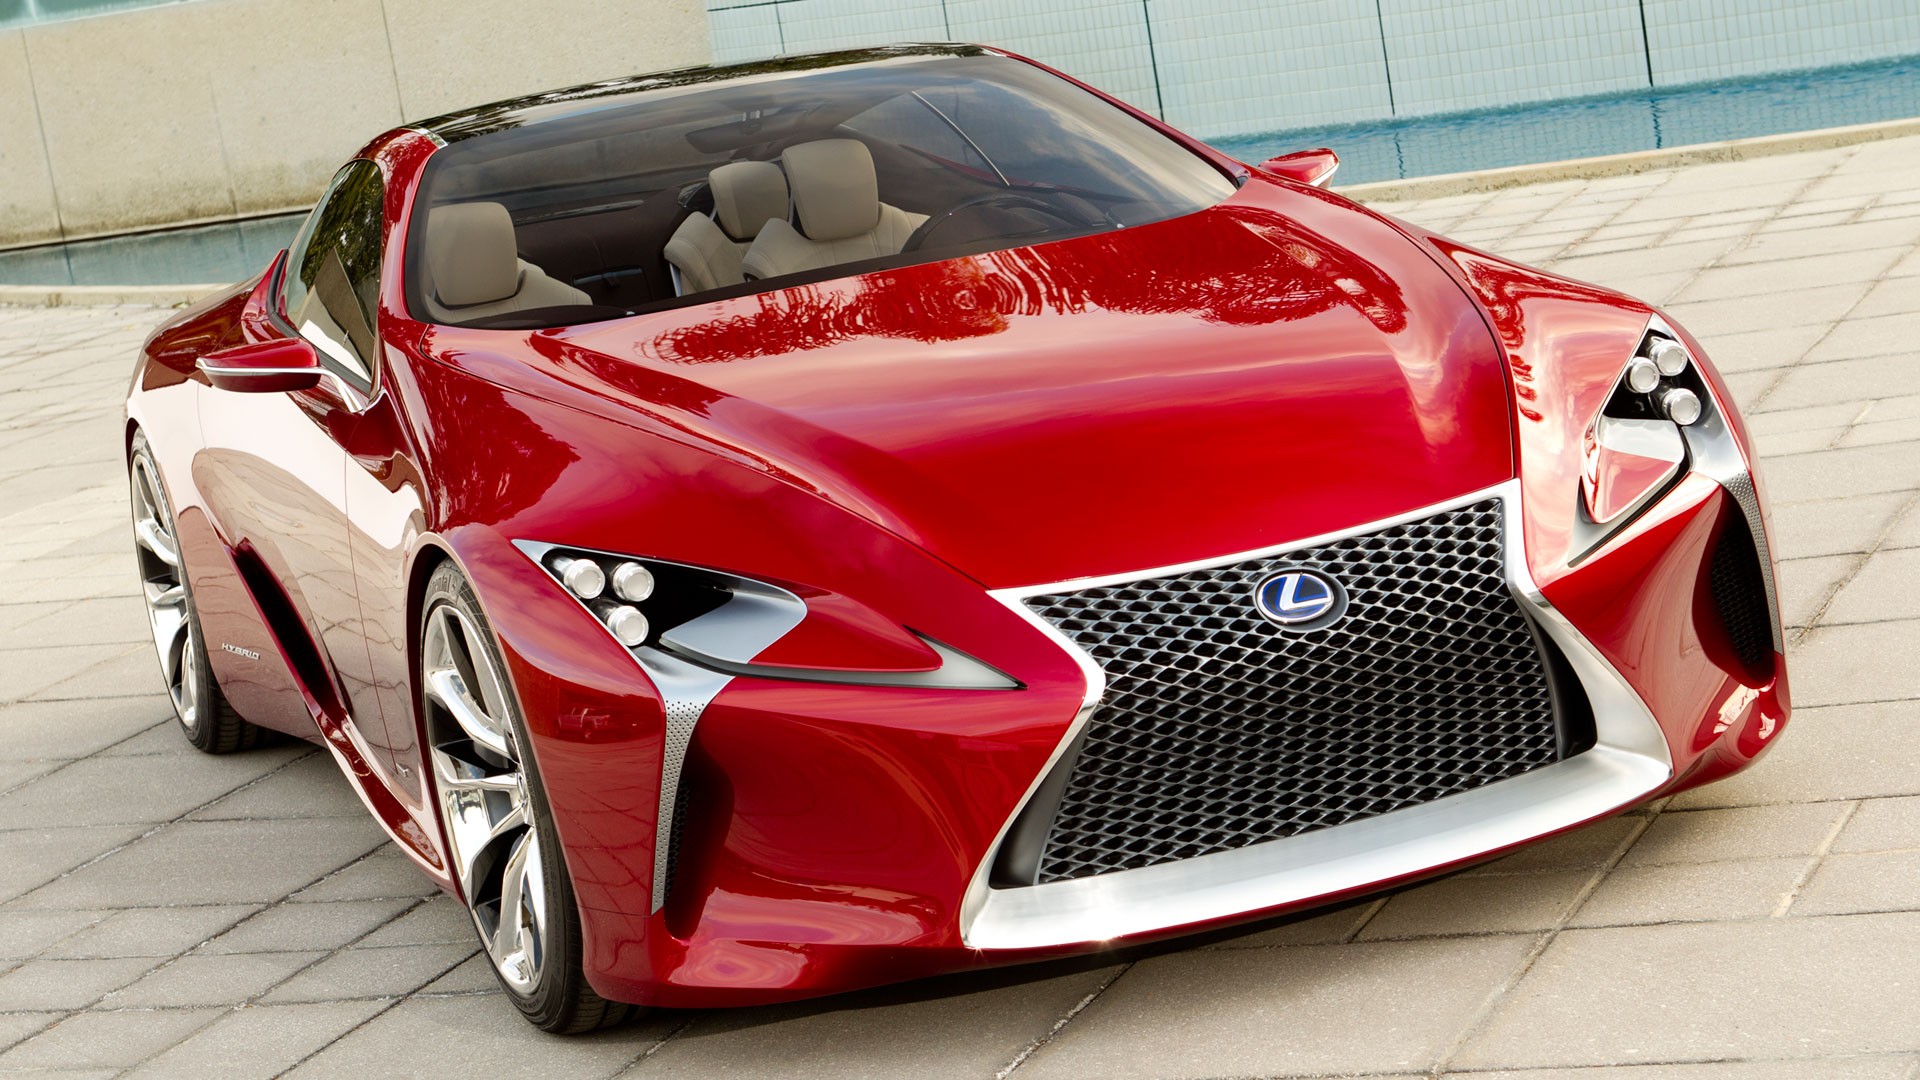 cars, Lexus, concept cars, Lexus LF-LC, front angle view - desktop wallpaper